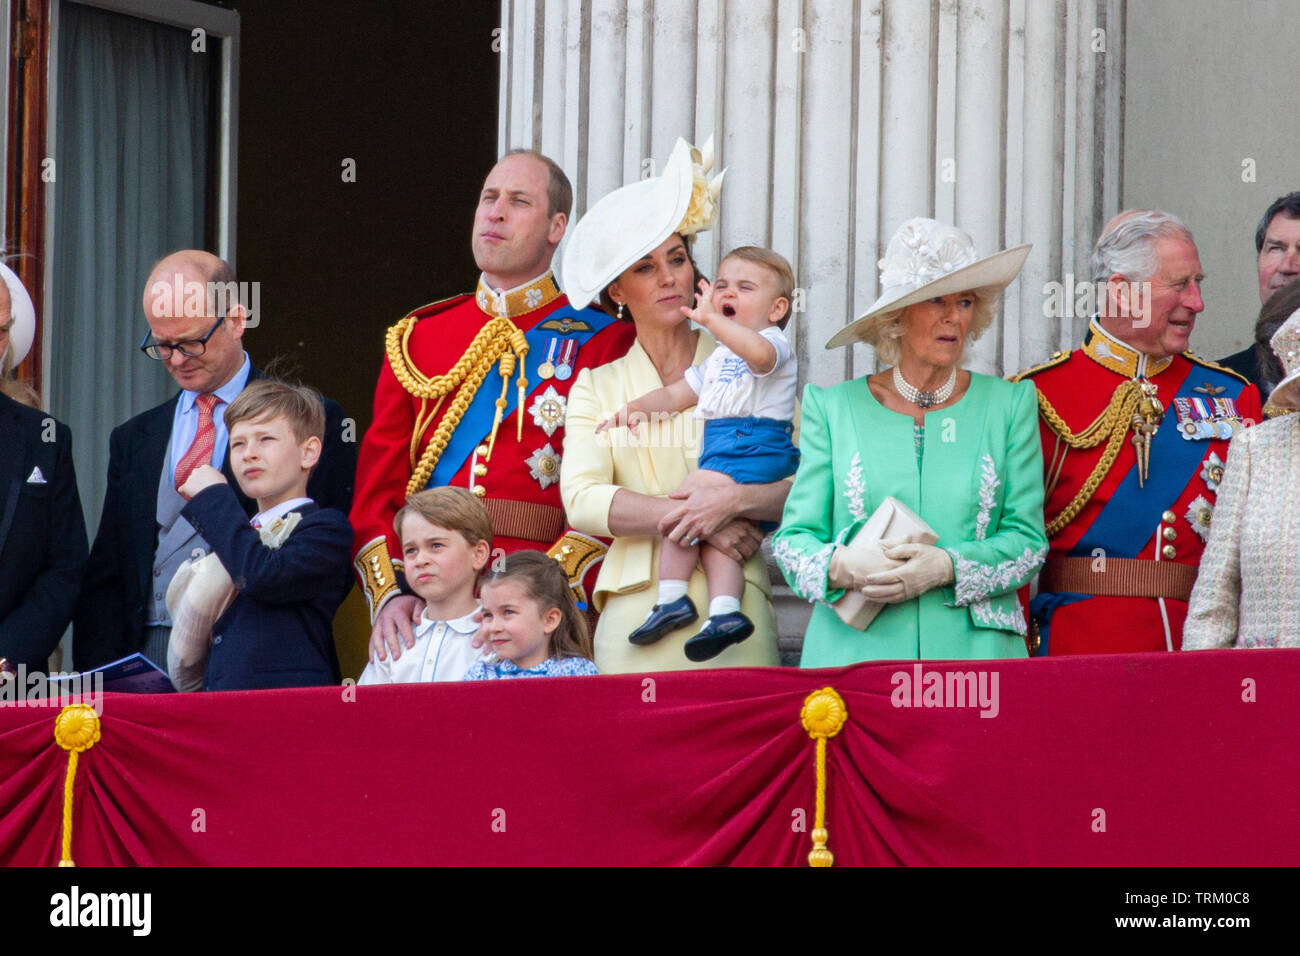 Photo datée du 8 juin montre le Prince William, Catherine duchesse de Cambridge, le Prince Louis, Prince George et la Princesse Charlotte à la parade la couleur à Londres aujourd'hui. L'anniversaire officiel de la Reine a été marquée avec la parade annuelle de la parade de couleur. Elle a été rejoint par des membres de sa famille et des milliers de spectateurs à regarder l'écran en Horse Guards Parade dans Whitehall. Le Prince de Galles, la duchesse de Cornwall, le duc et la duchesse de Cambridge et le duc et la duchesse de Sussex est allé(e) à tous. La reine a célébré son 93e anniversaire en avril. Les colonels royale - le Prince Banque D'Images